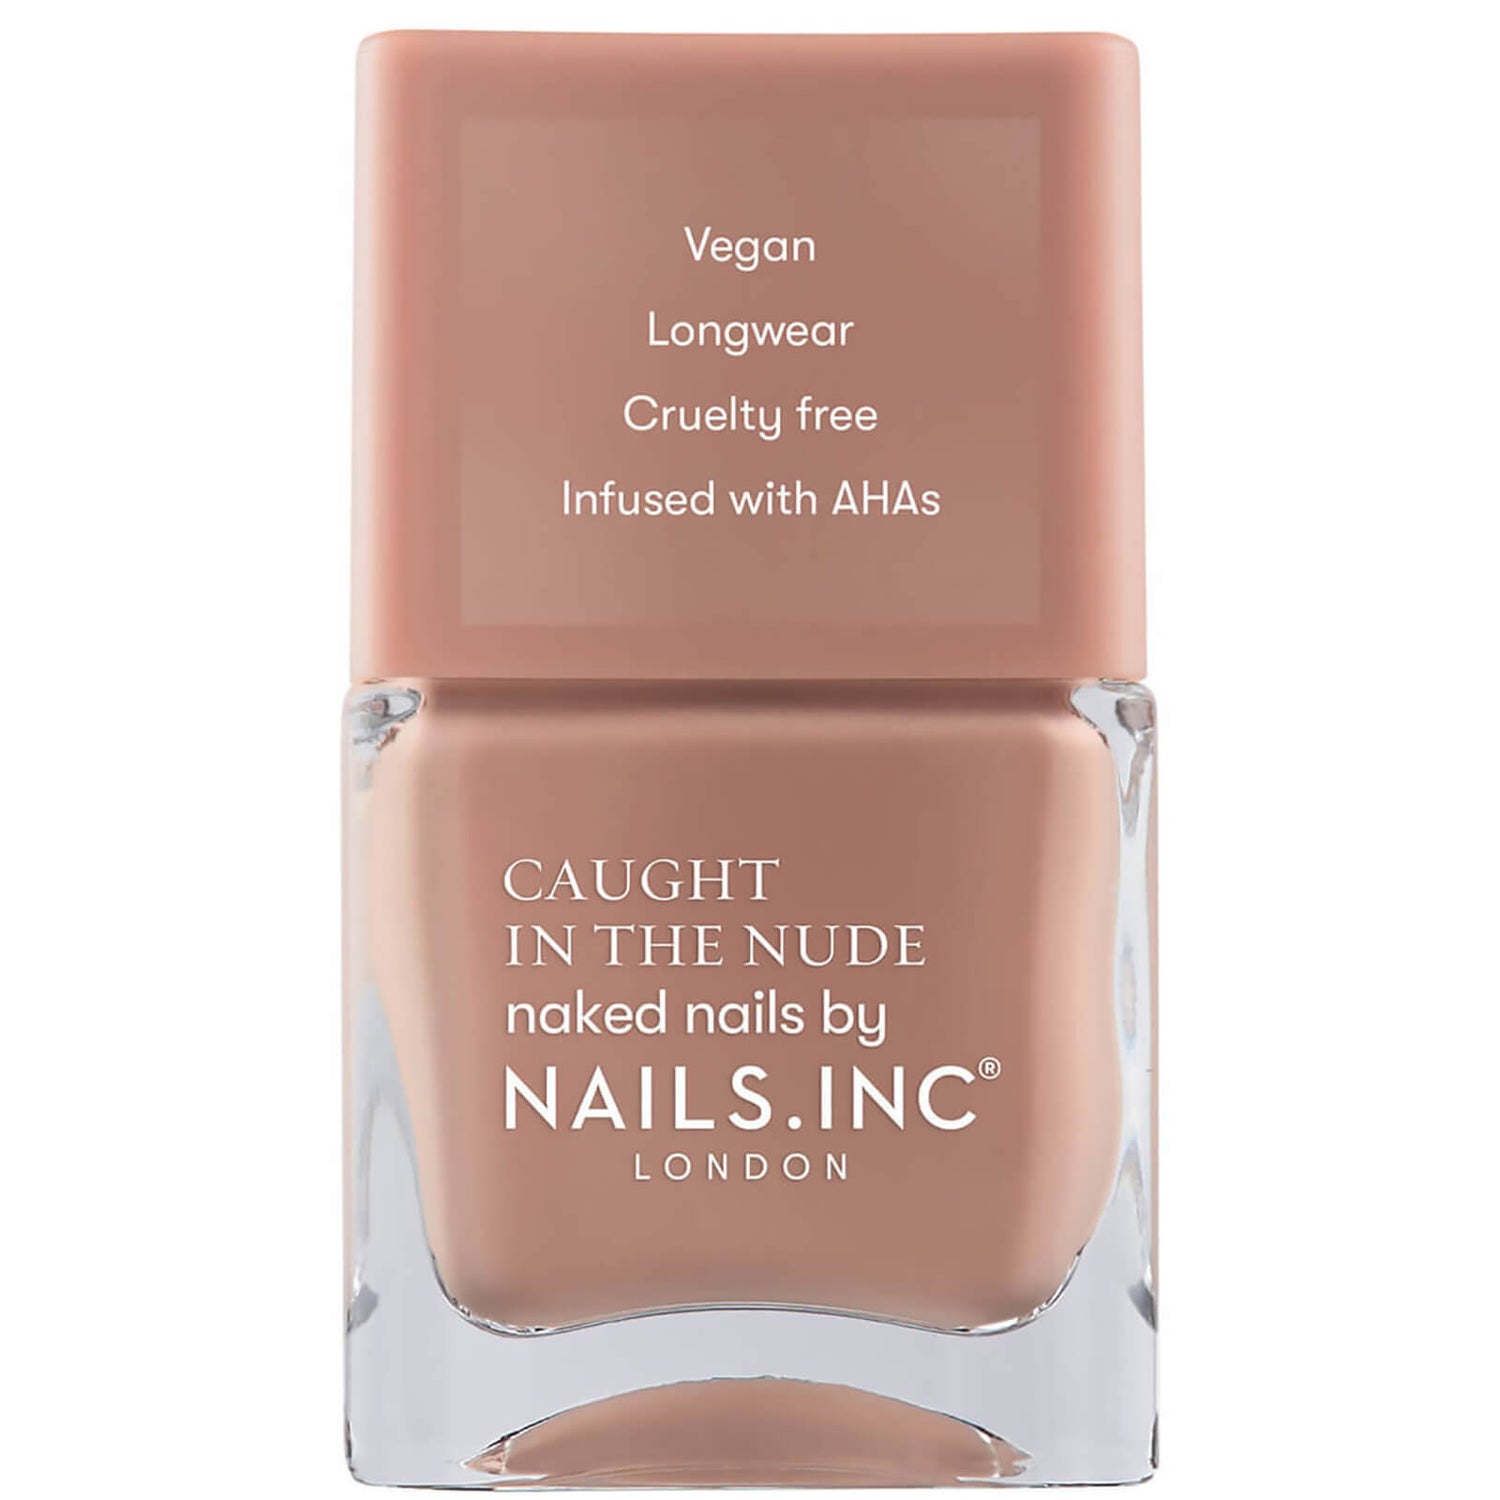 nails inc. Caught in The Nude Nagellack 15ml (Verschiedene Farbtöne)